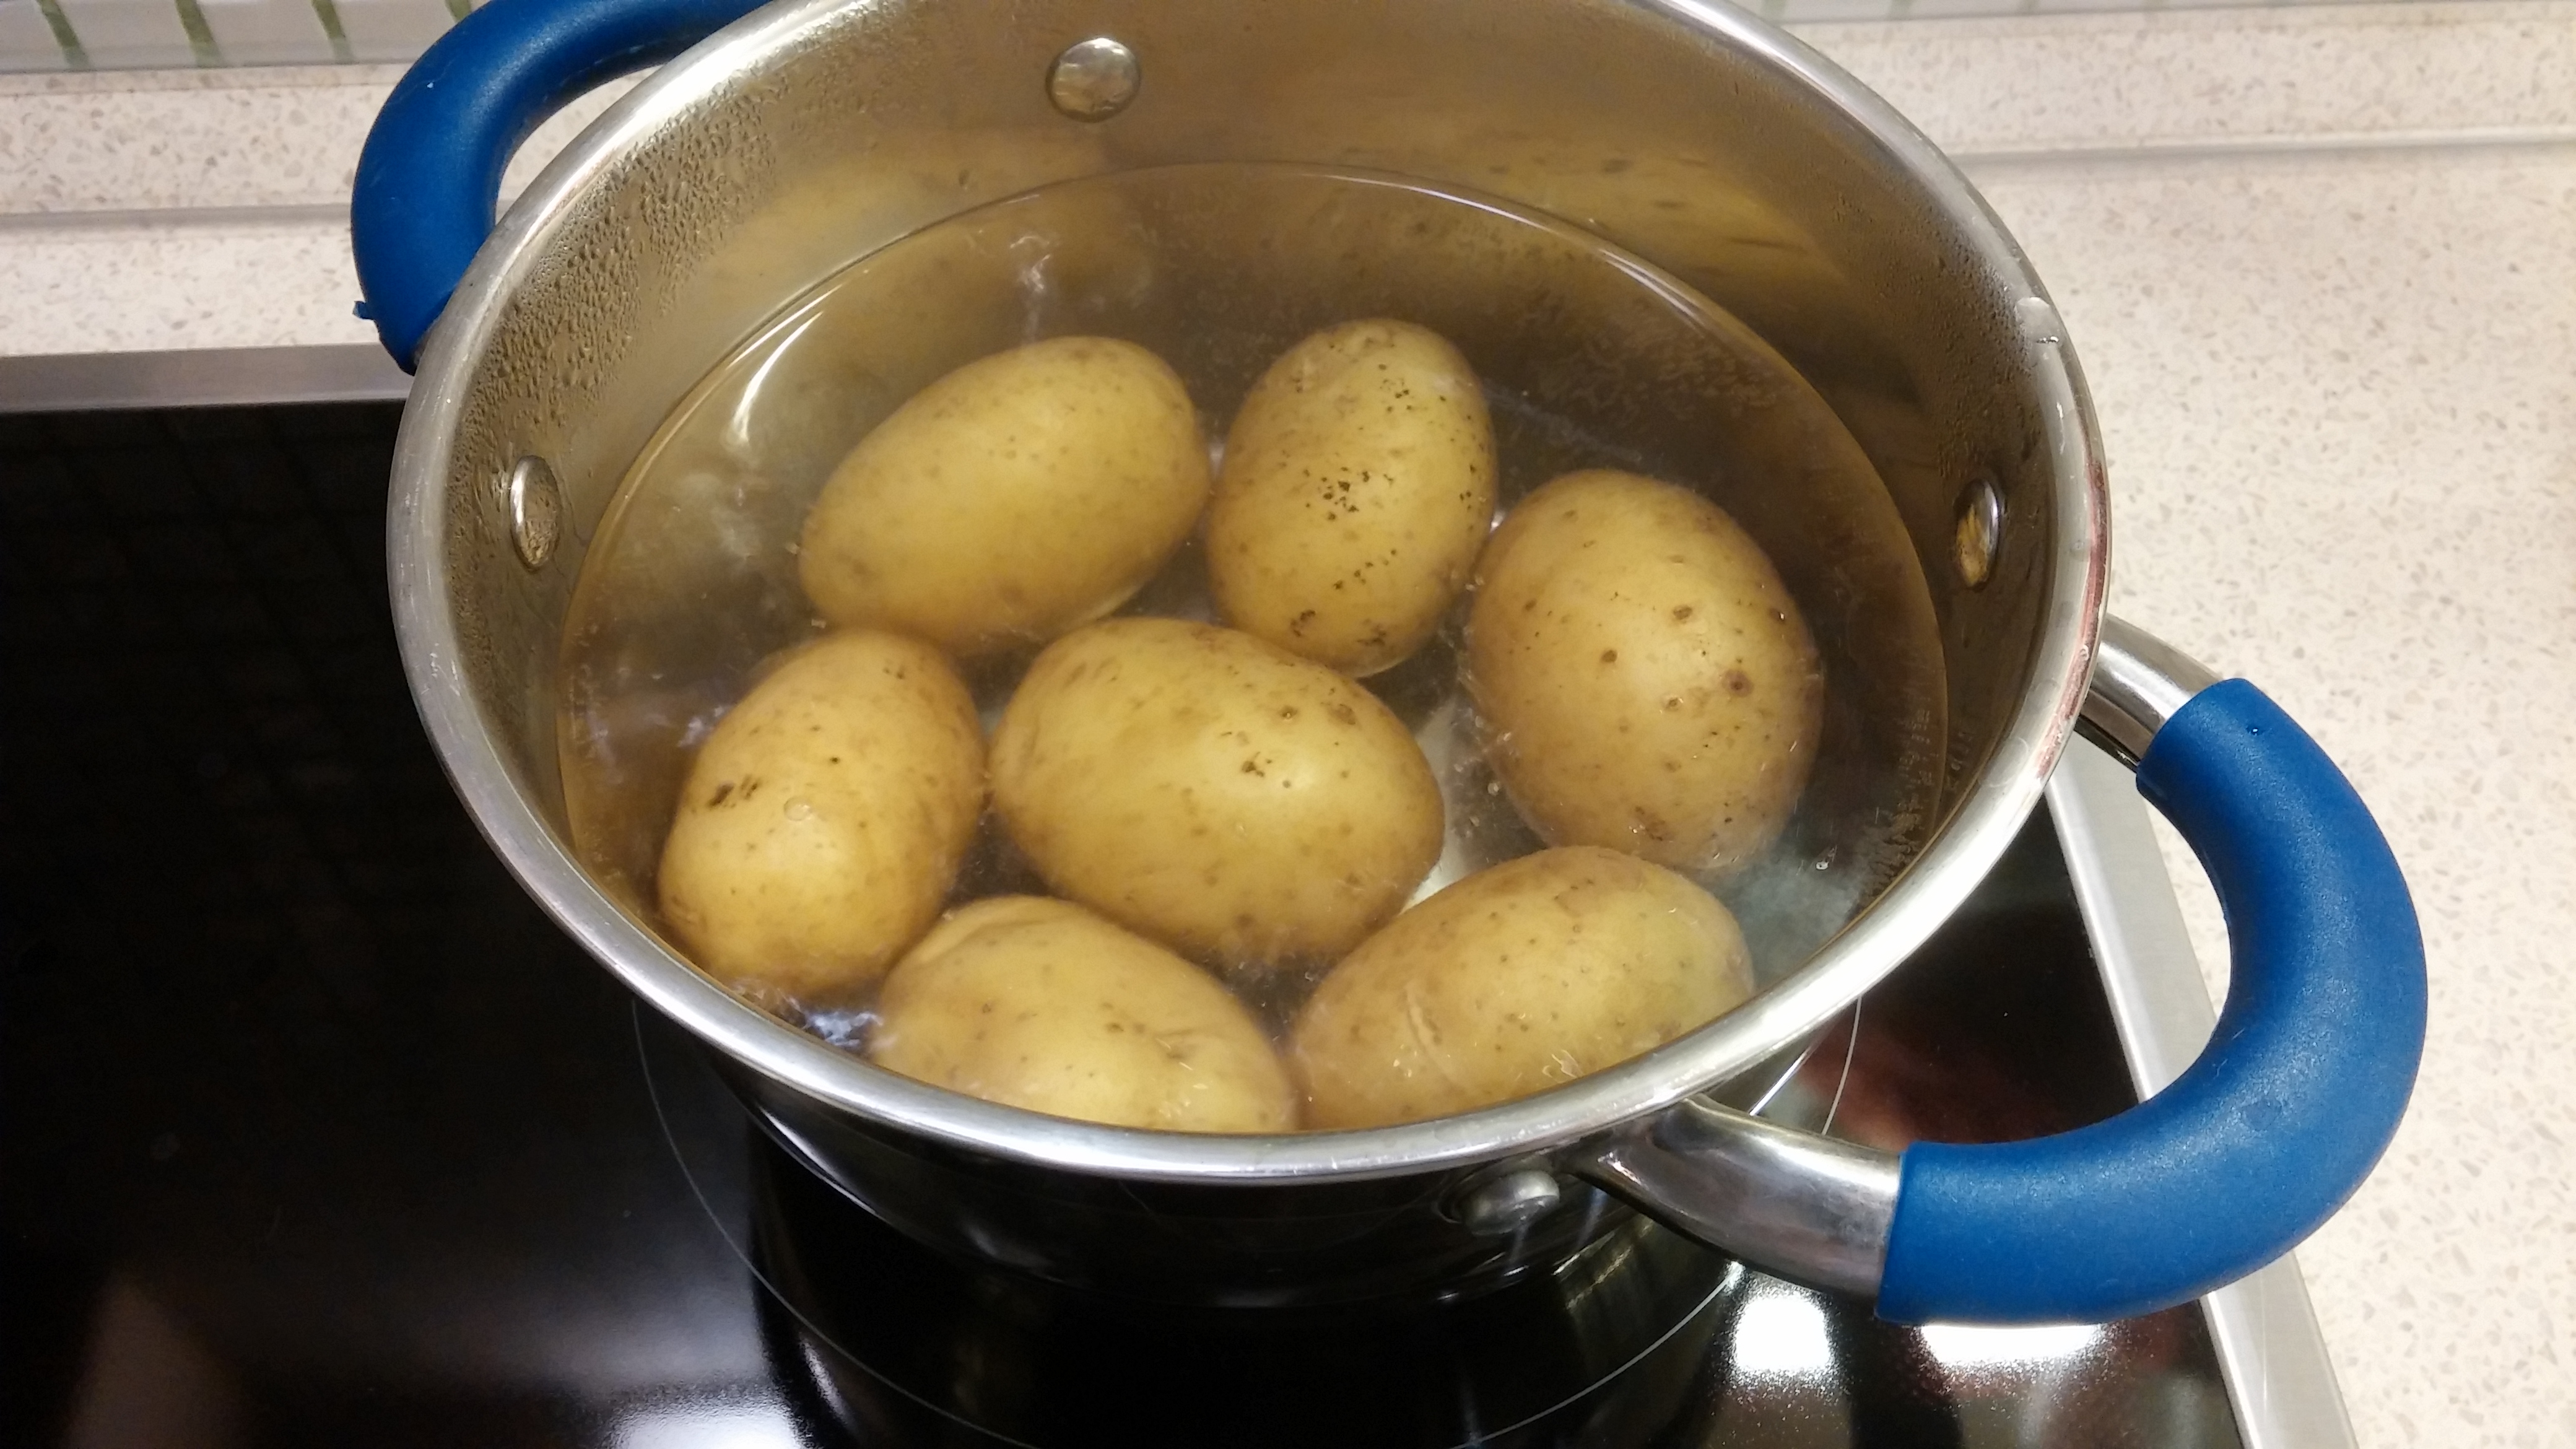 Картошку залило водой. Картошка в кастрюле. Вареная картошка в кастрюле. Отваривание картофеля. Варка картофеля в кастрюле в мундире.